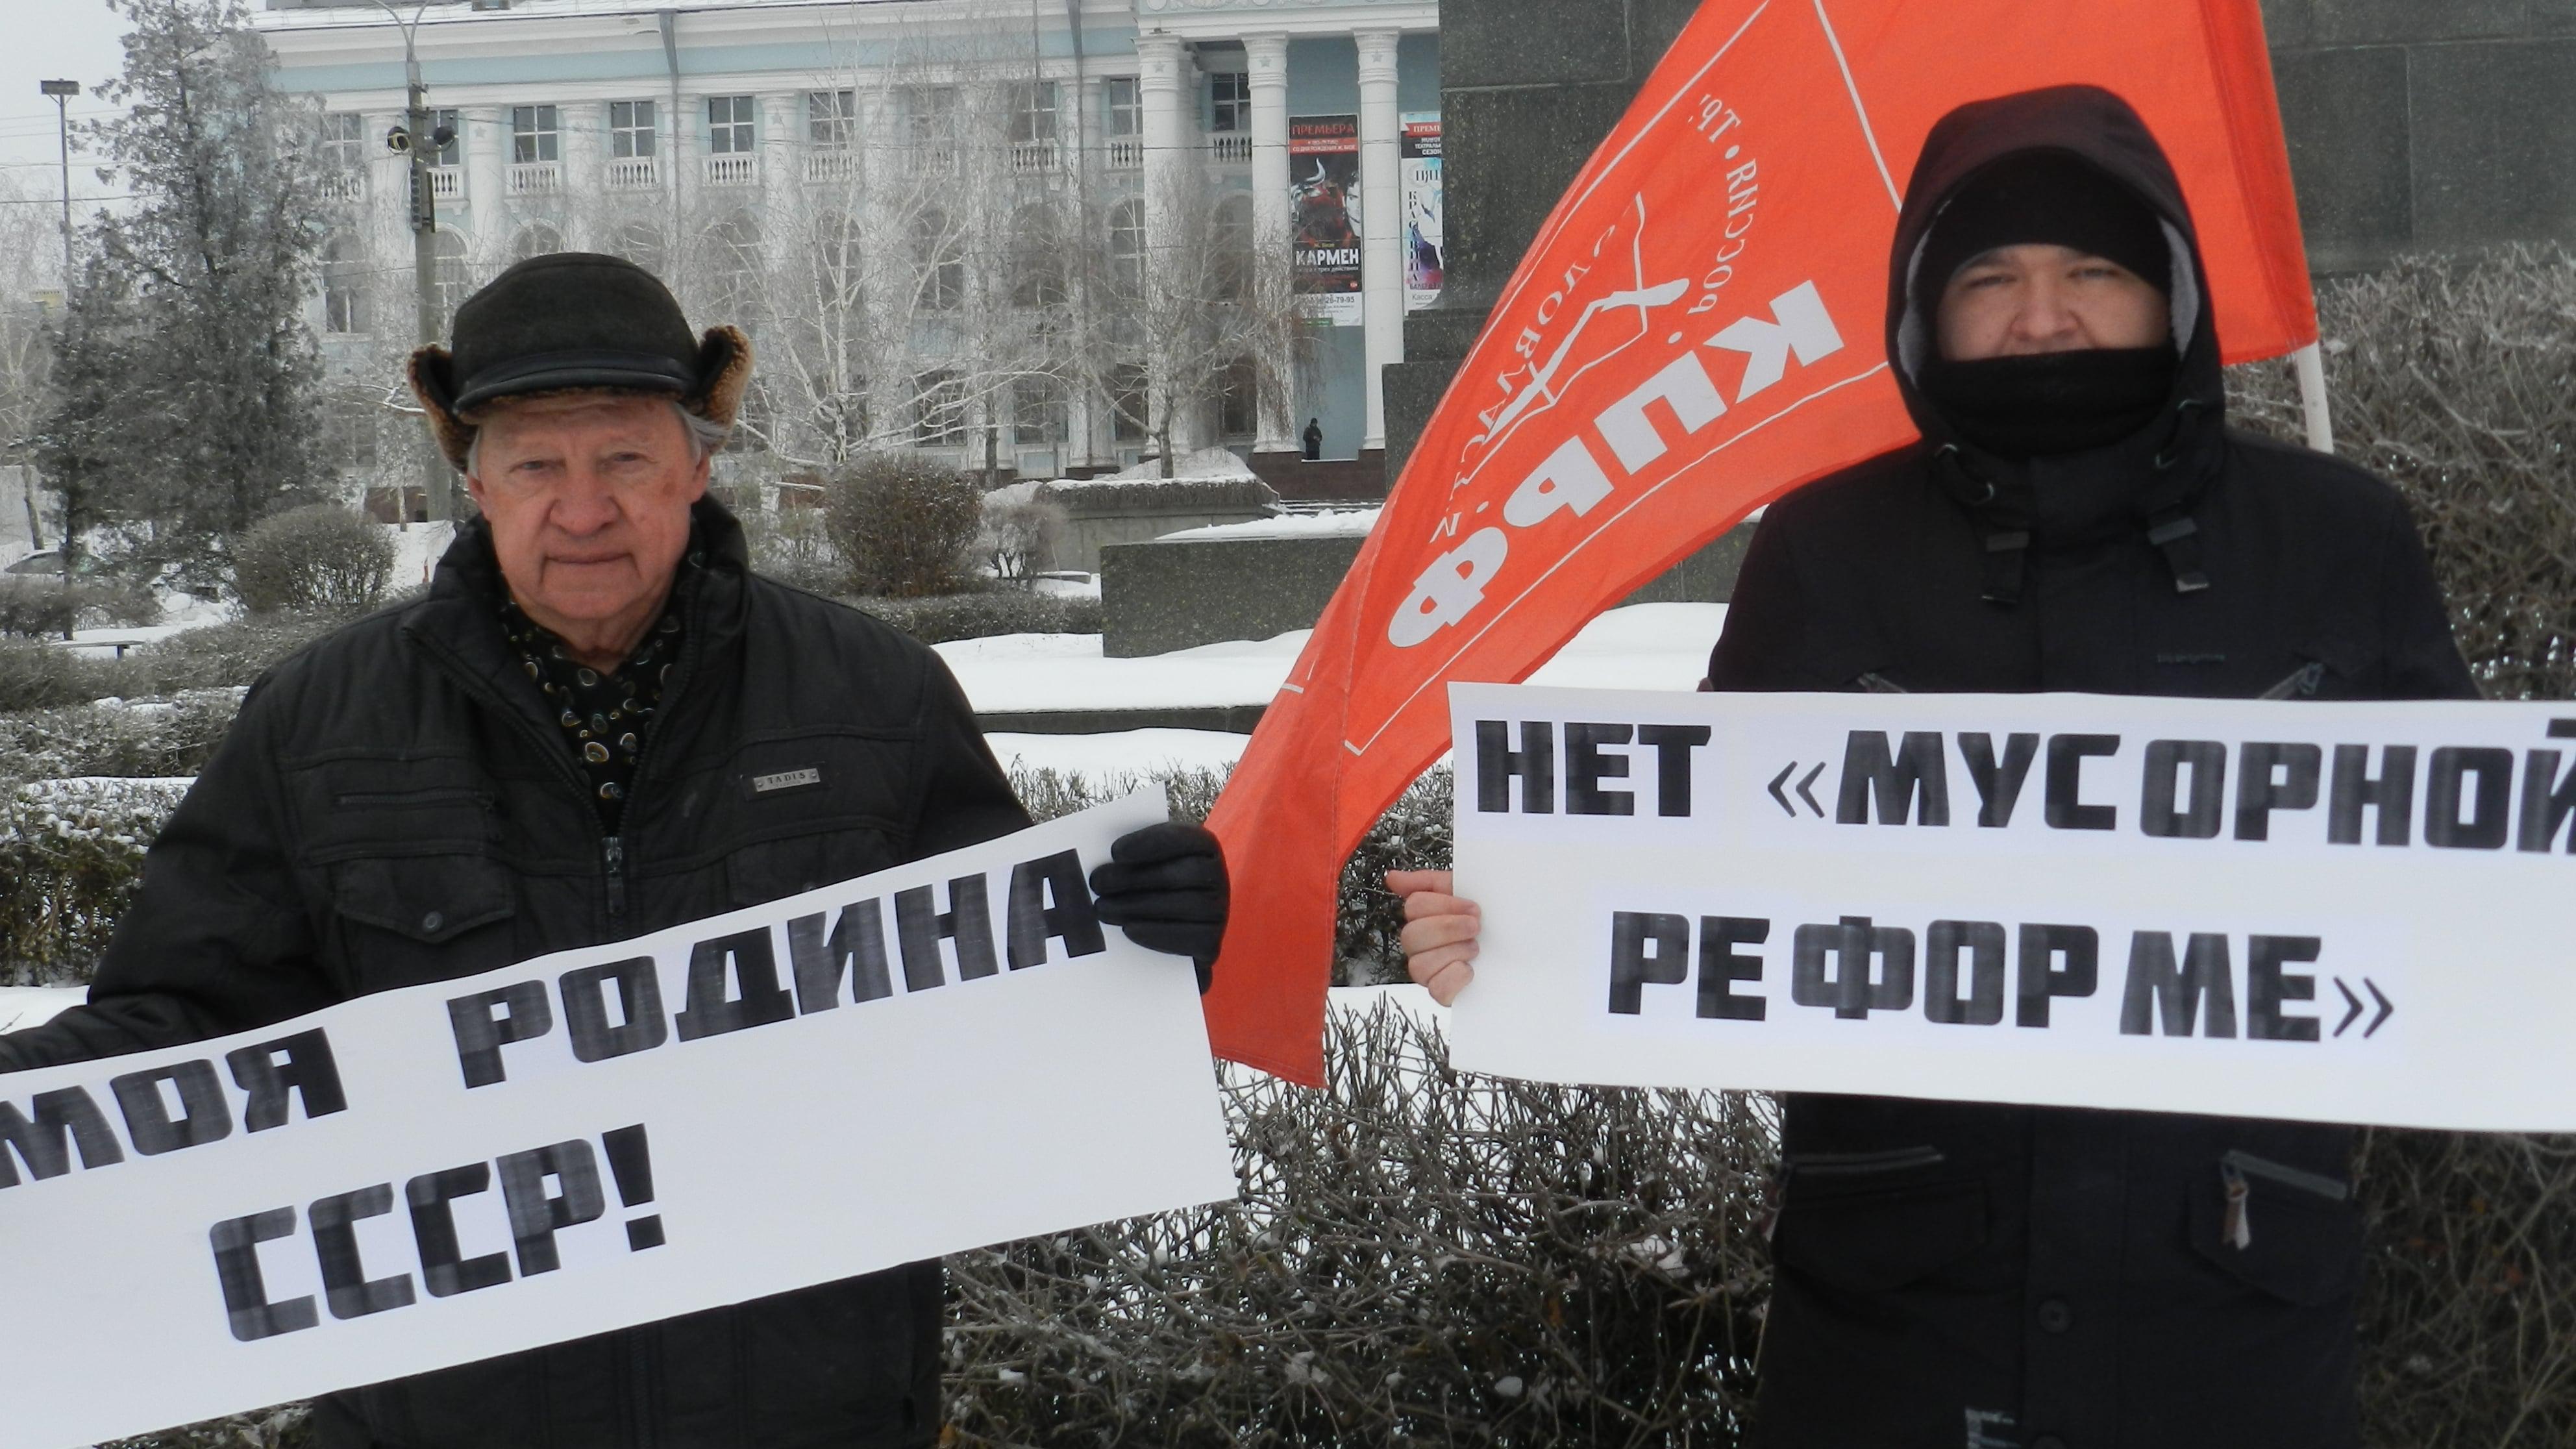 Участники пикета коммунистов против мусорной реформы в Волгограде, 1 февраля 2019 года. Фото Татьяны Филимоновой для "Кавказского узла"